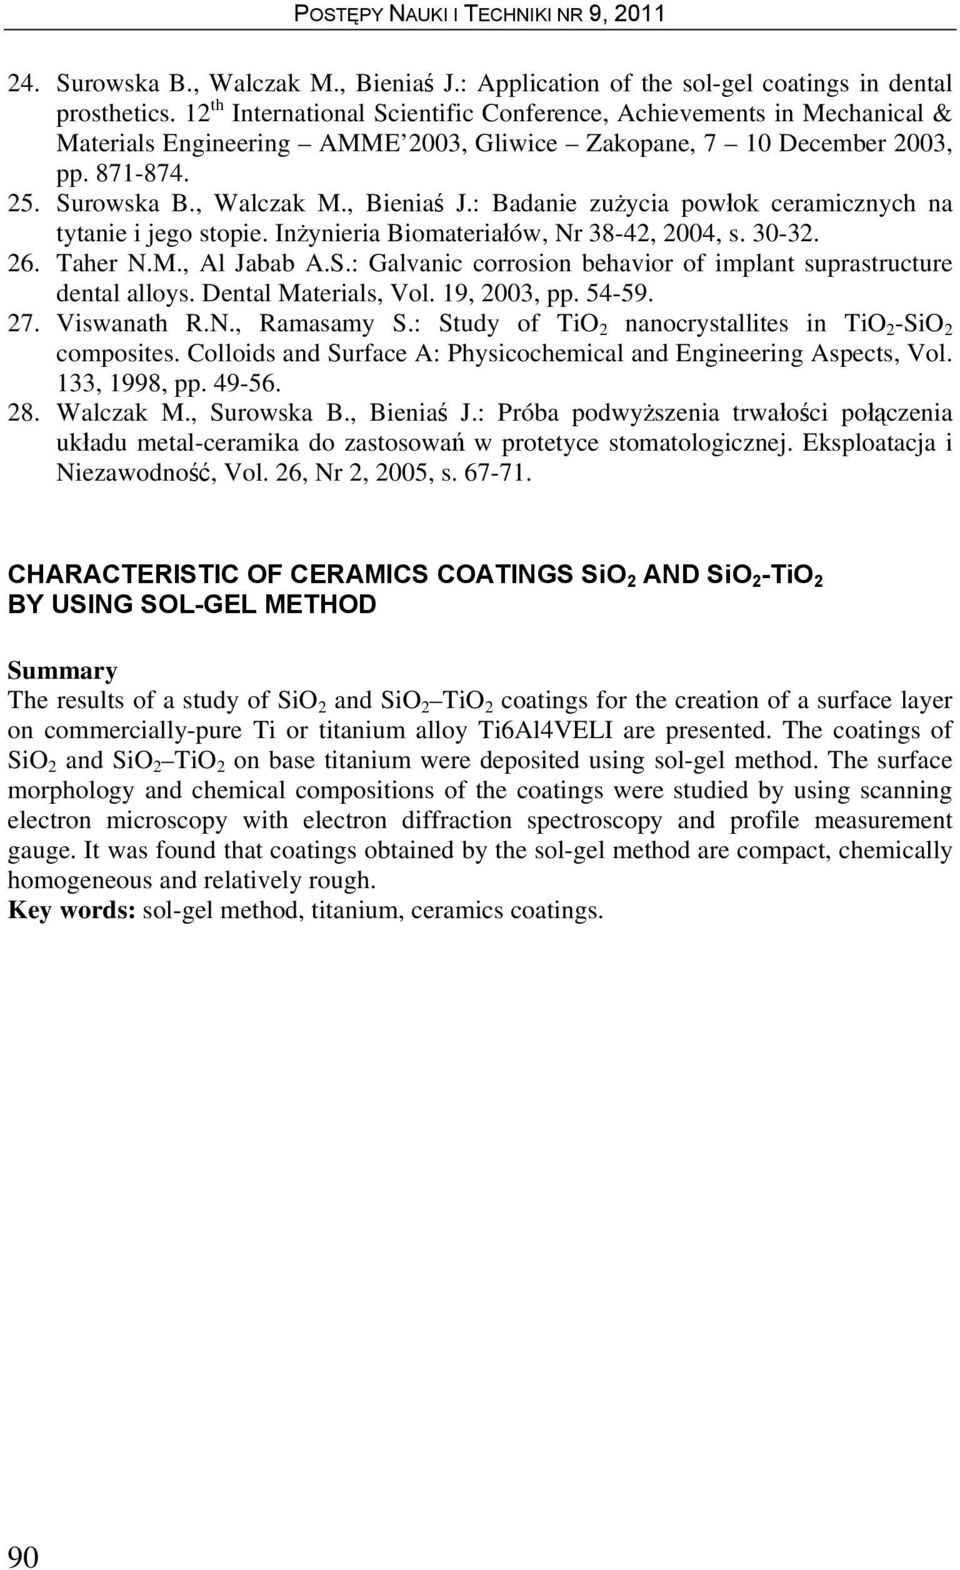 : Badanie zużycia powłok ceramicznych na tytanie i jego stopie. Inżynieria Biomateriałów, Nr 38-42, 2004, s. 30-32. 26. Taher N.M., Al Jabab A.S.